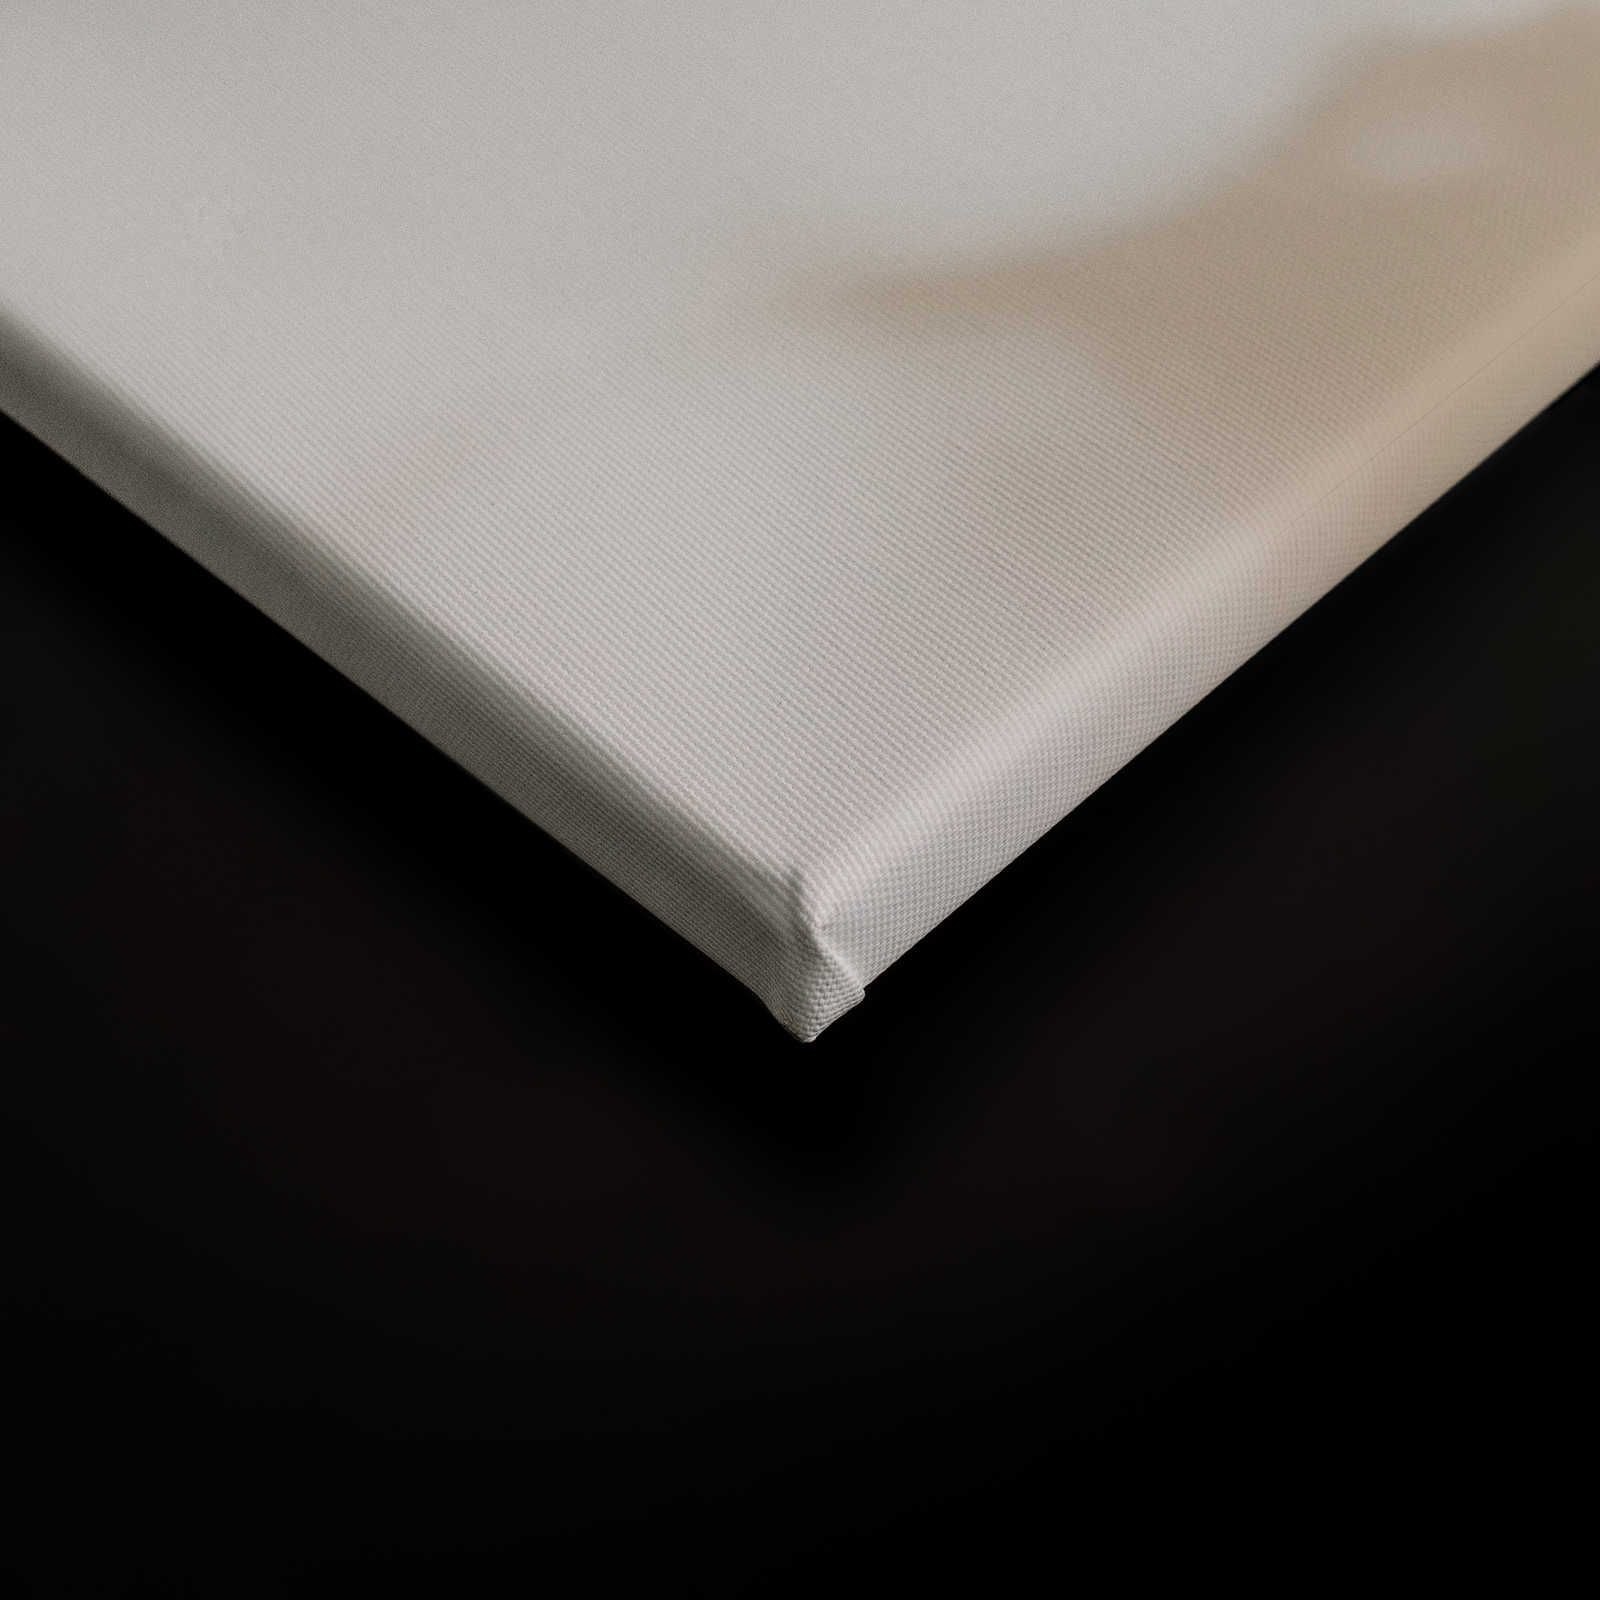             Camera chiara 3 - Quadro su tela Ombre della natura in beige e bianco - 0,90 m x 0,60 m
        